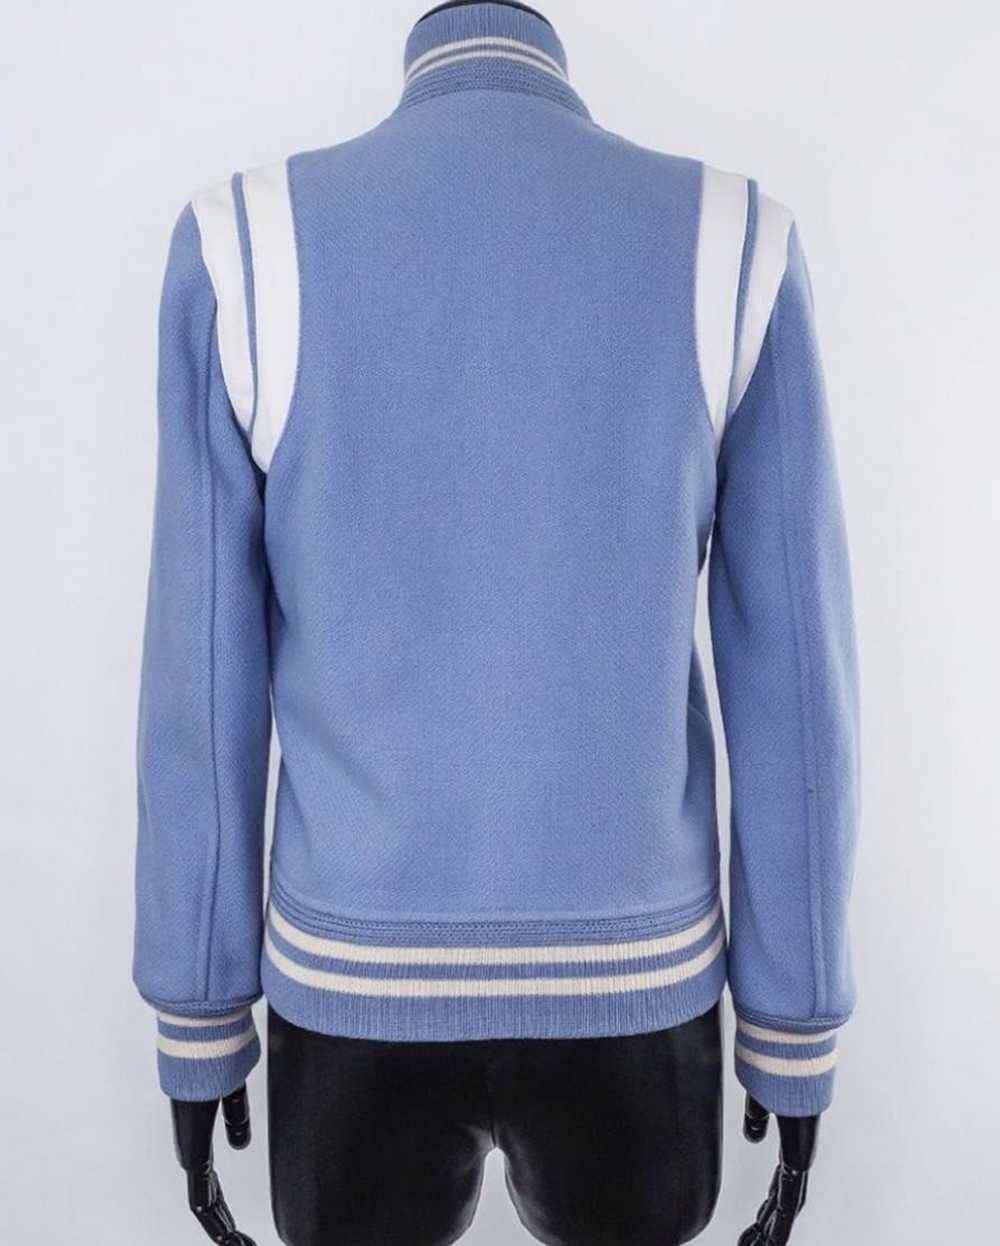 Yves Saint Laurent Saint Laurent teddy jacket - image 4